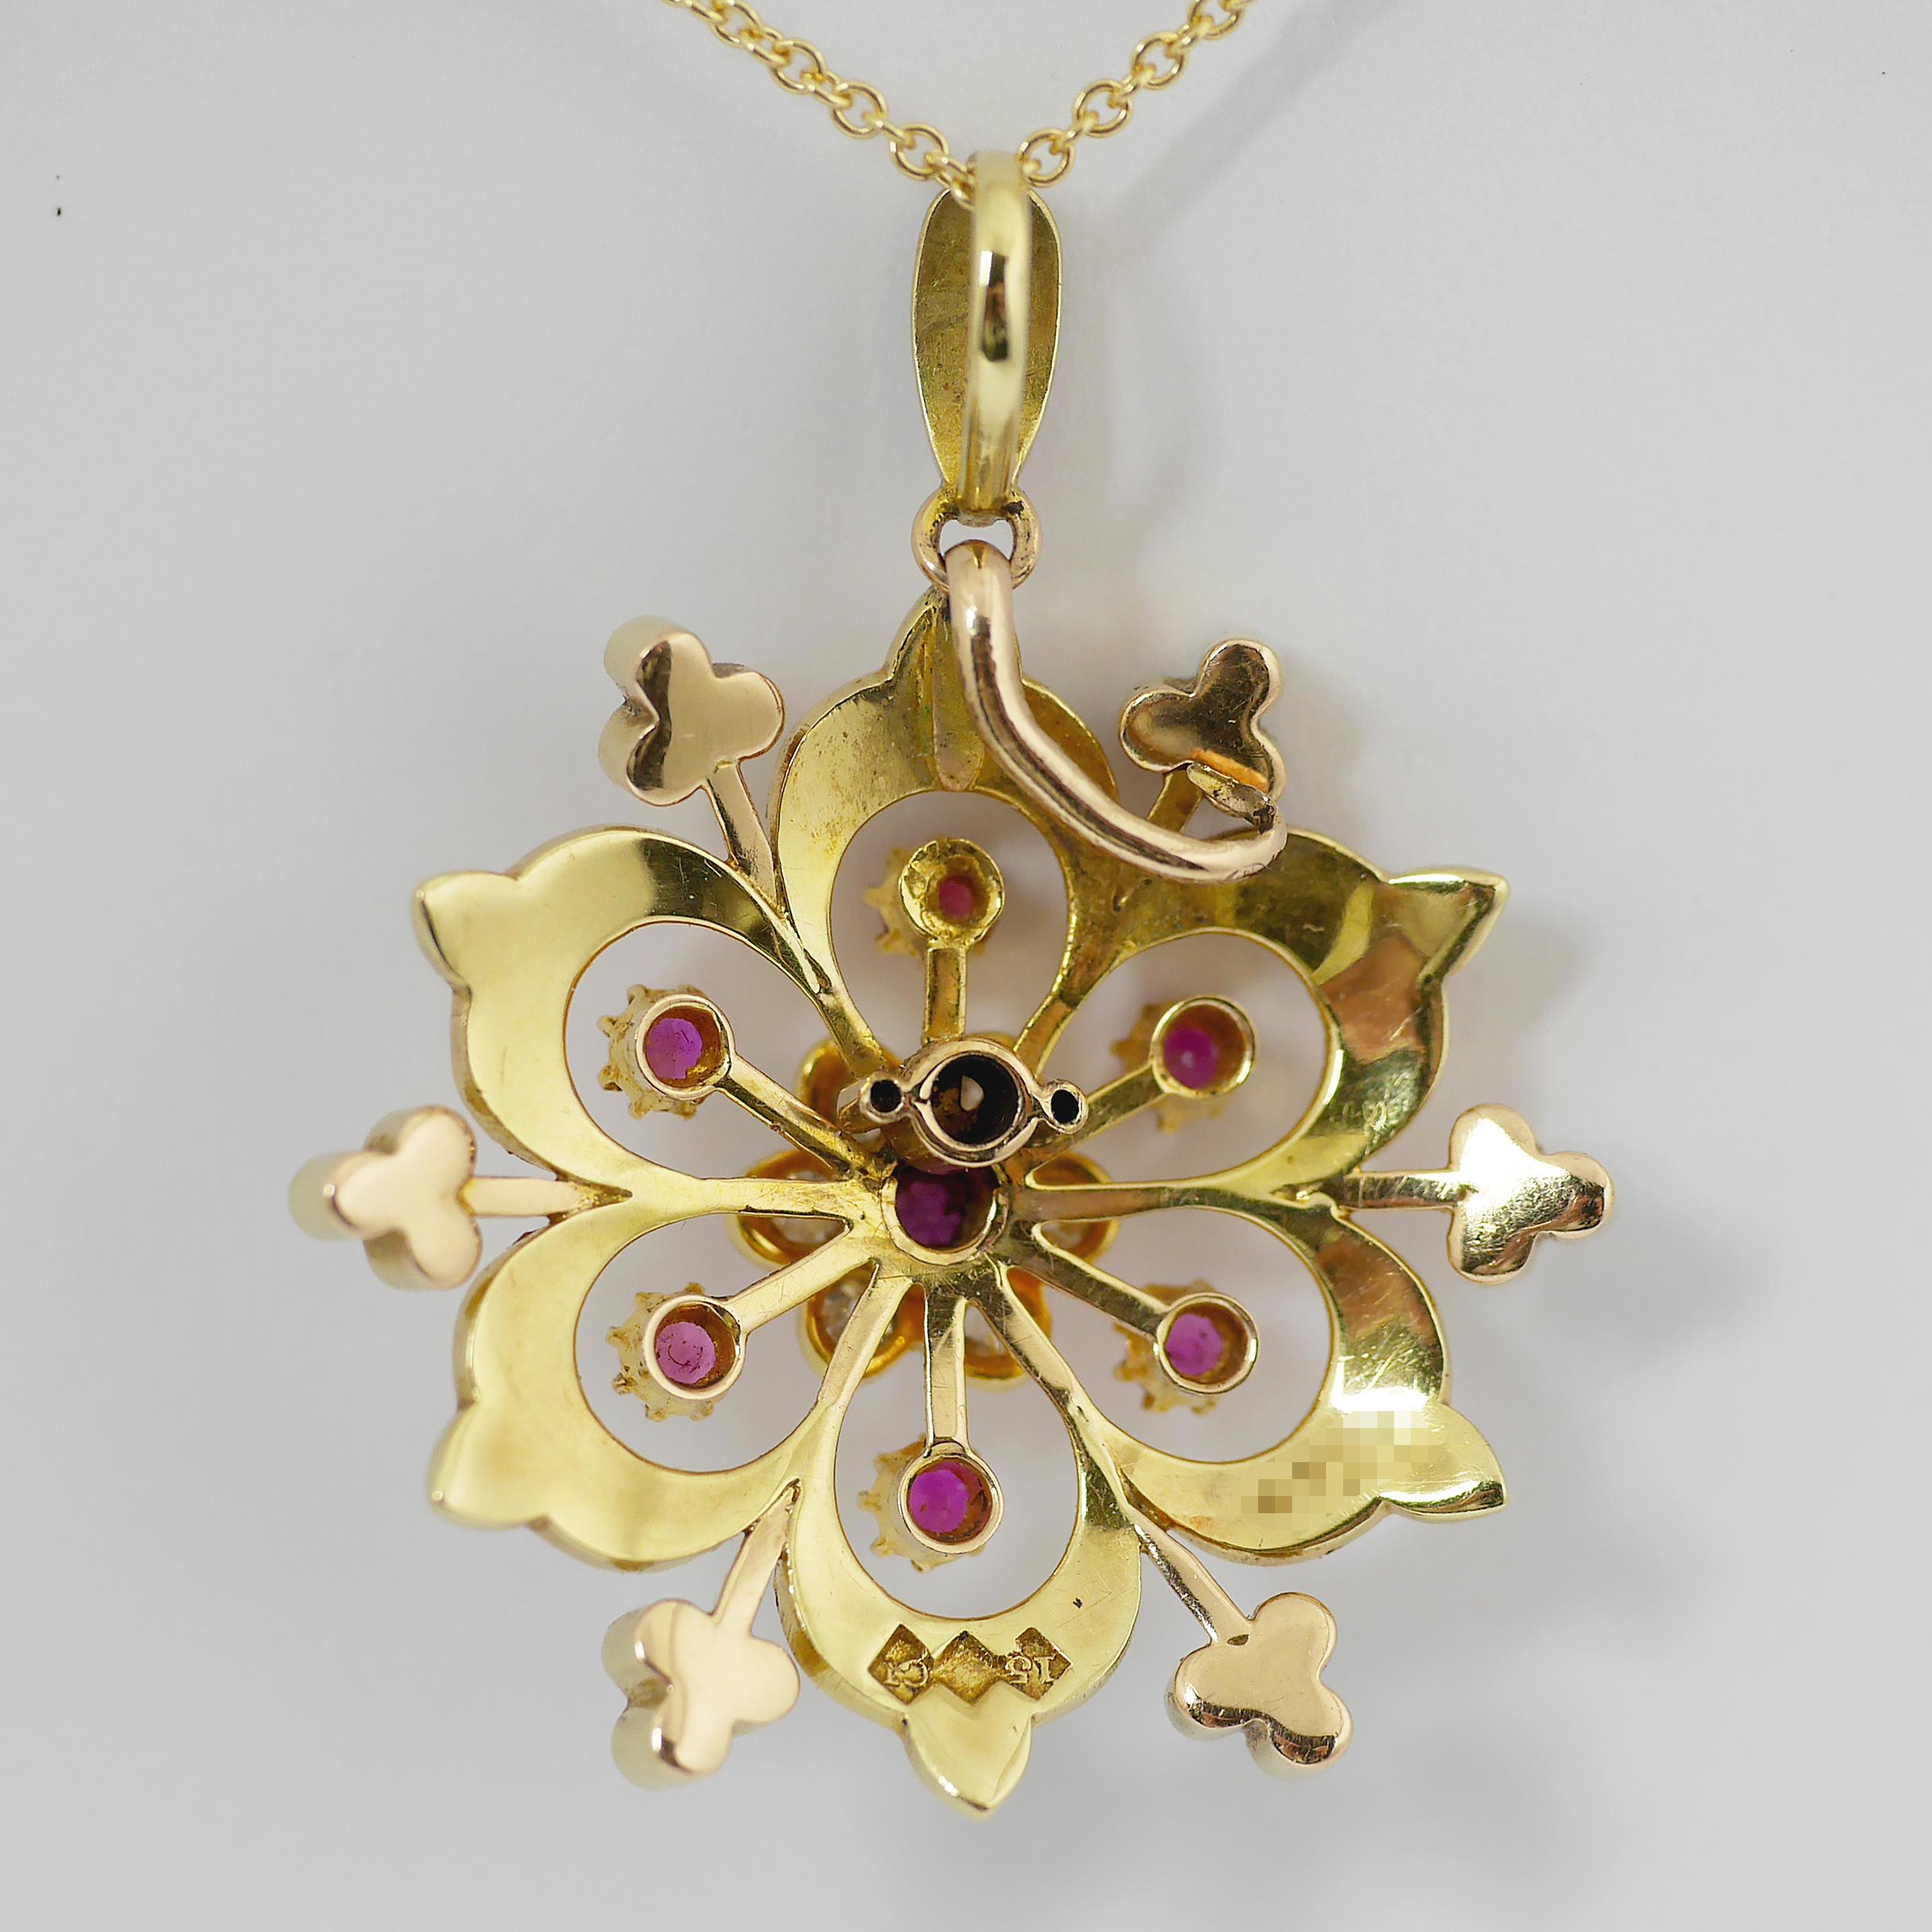 Ruby, Pearl, Diamond Victorian Pendant, circa 1850 For Sale 1